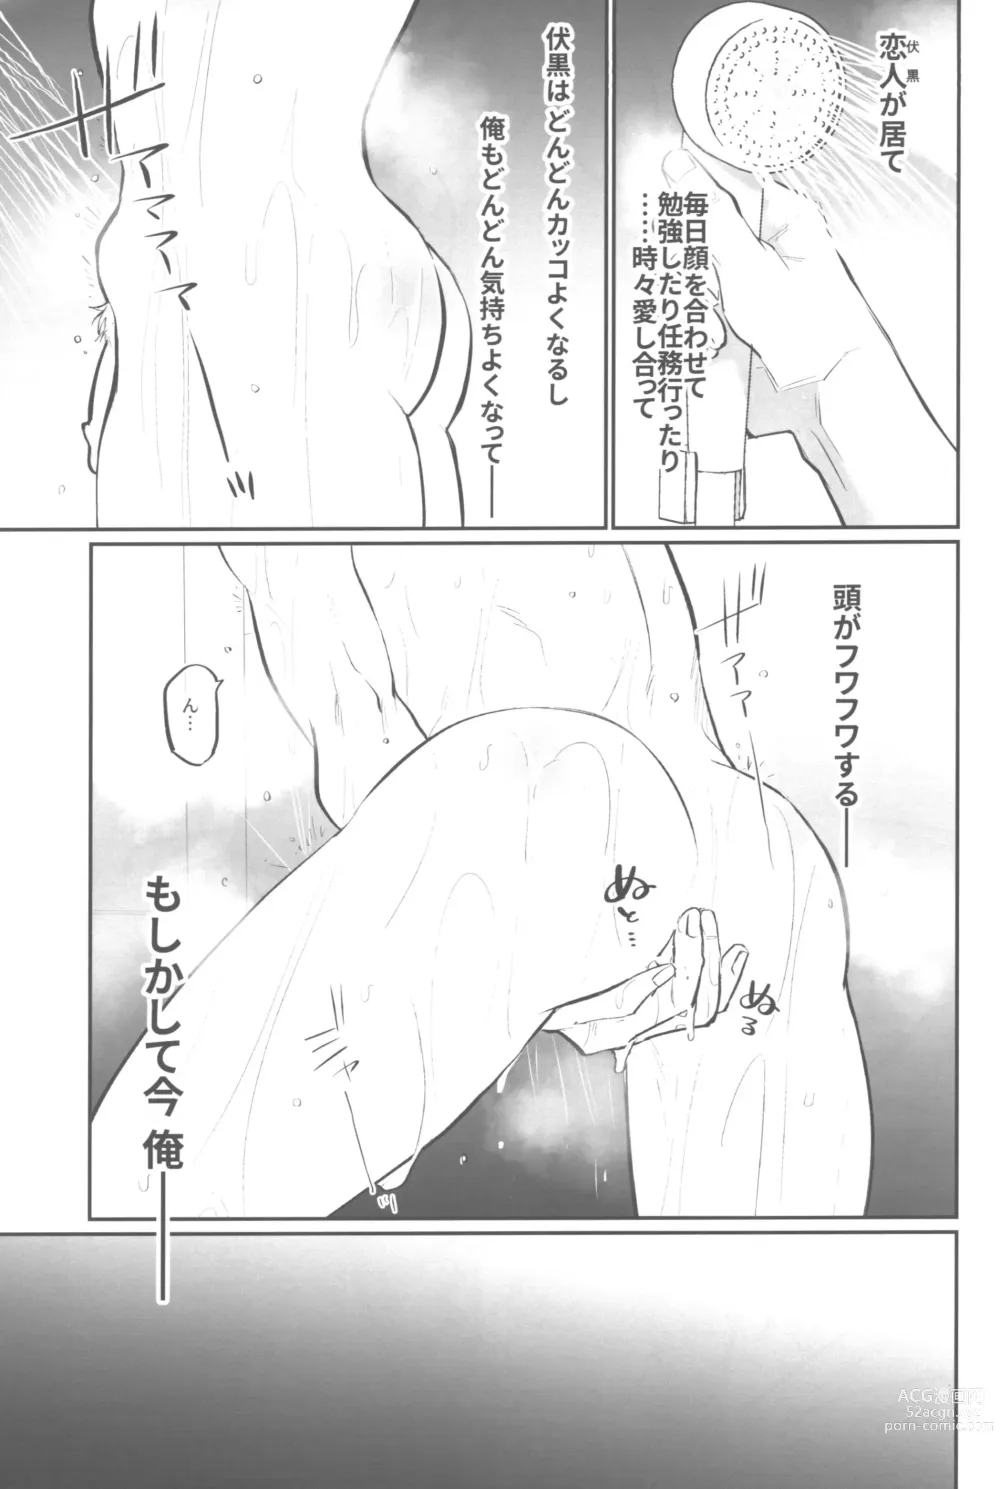 Page 14 of doujinshi Shiawase na no kamo.